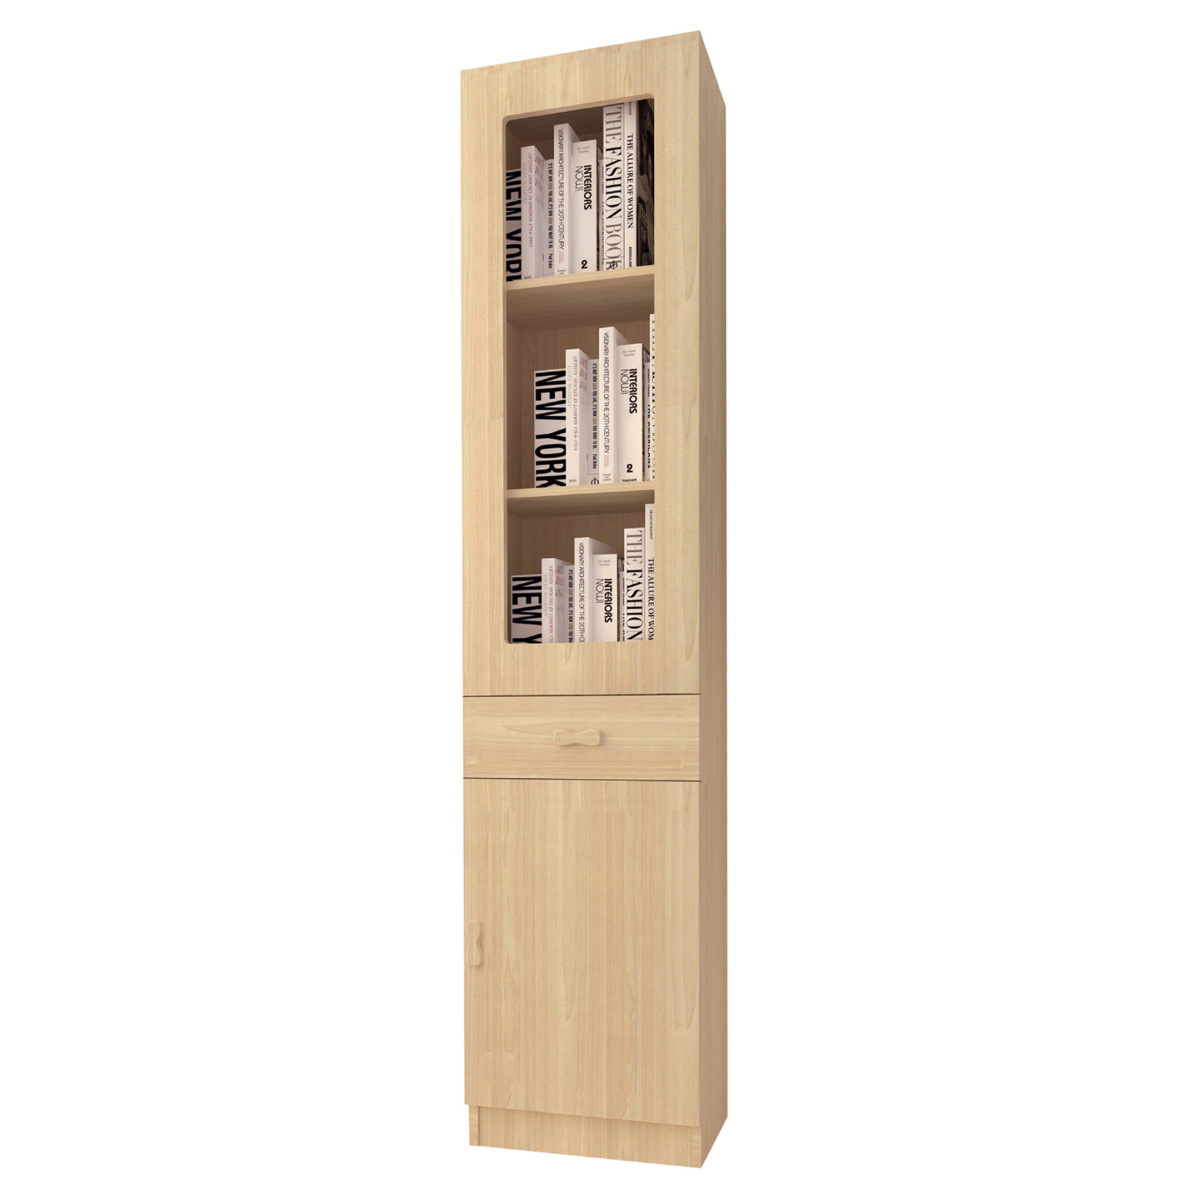 File / Book Cabinets